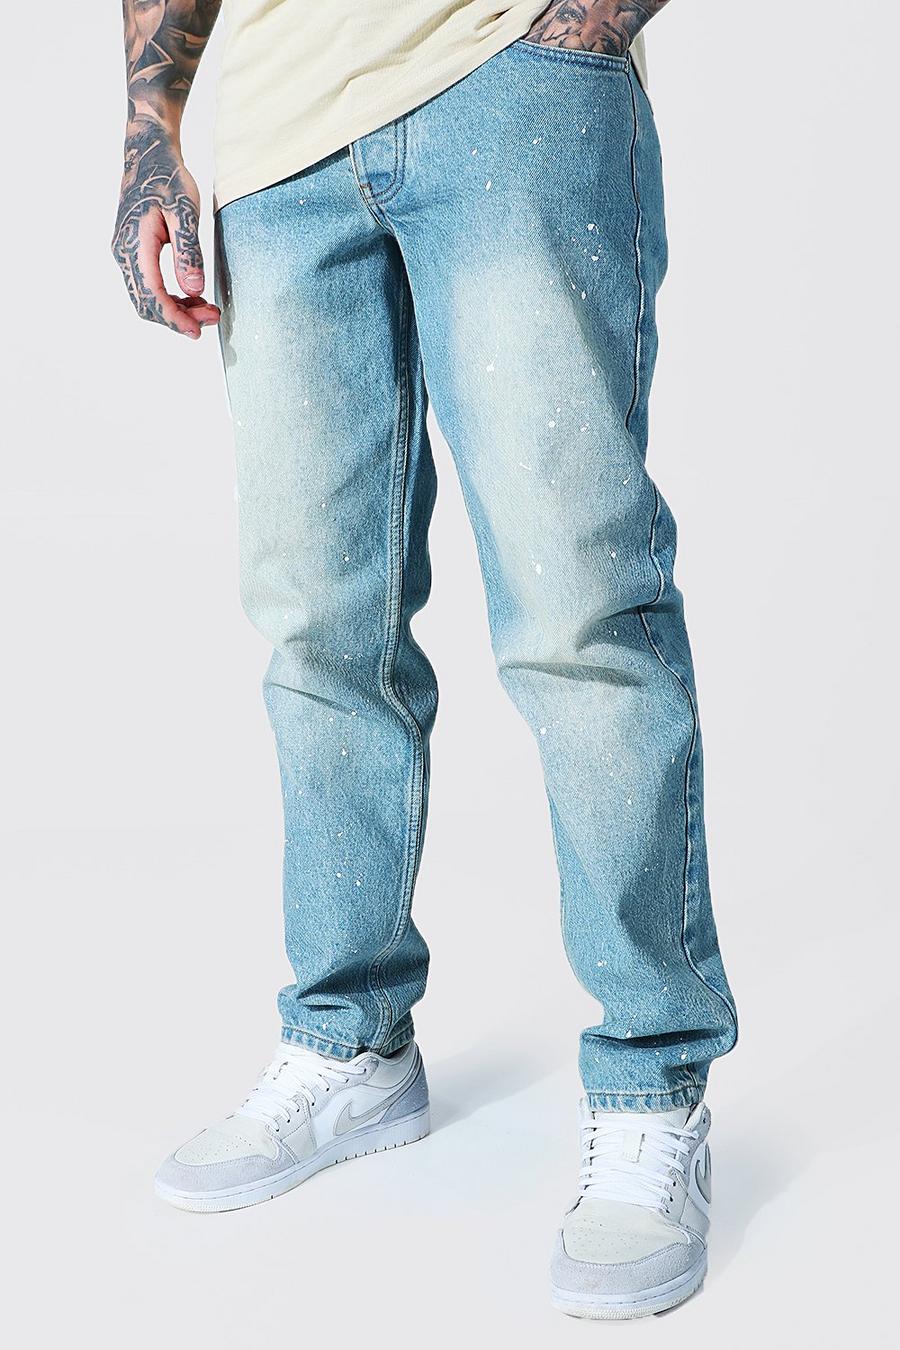 כחול עתיק ג'ינס מבד קשיח בגזרה משוחררת עם כתמי צבע